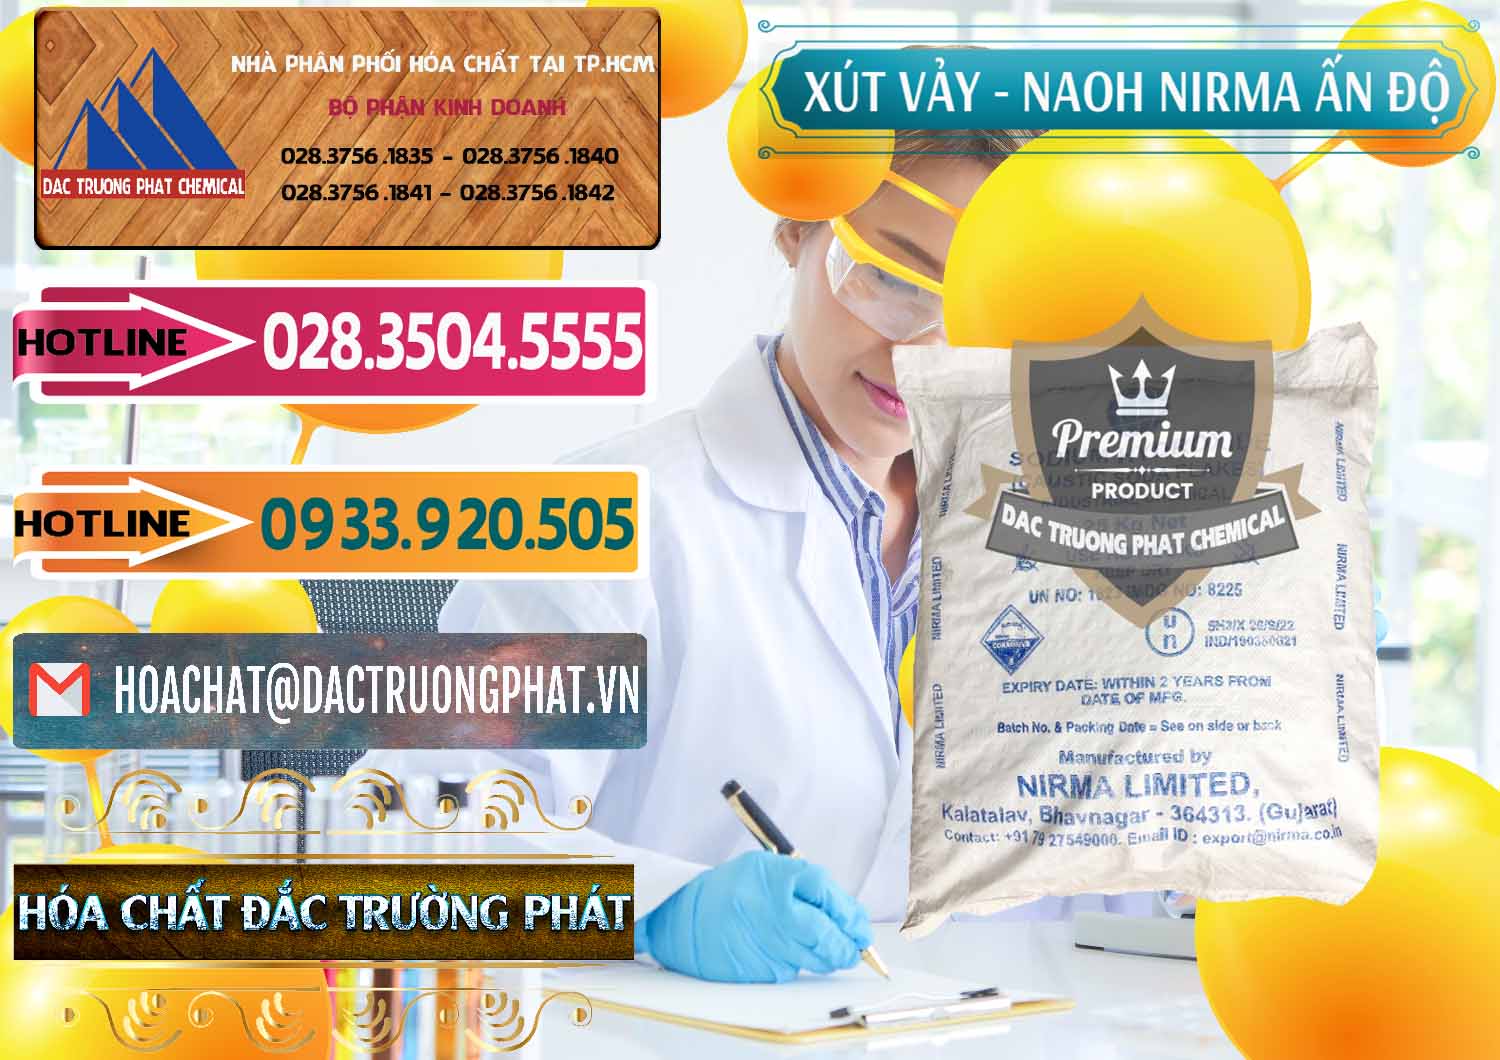 Nơi cung ứng & bán Xút Vảy - NaOH Vảy Nirma Ấn Độ India - 0371 - Cty phân phối - cung cấp hóa chất tại TP.HCM - dactruongphat.vn